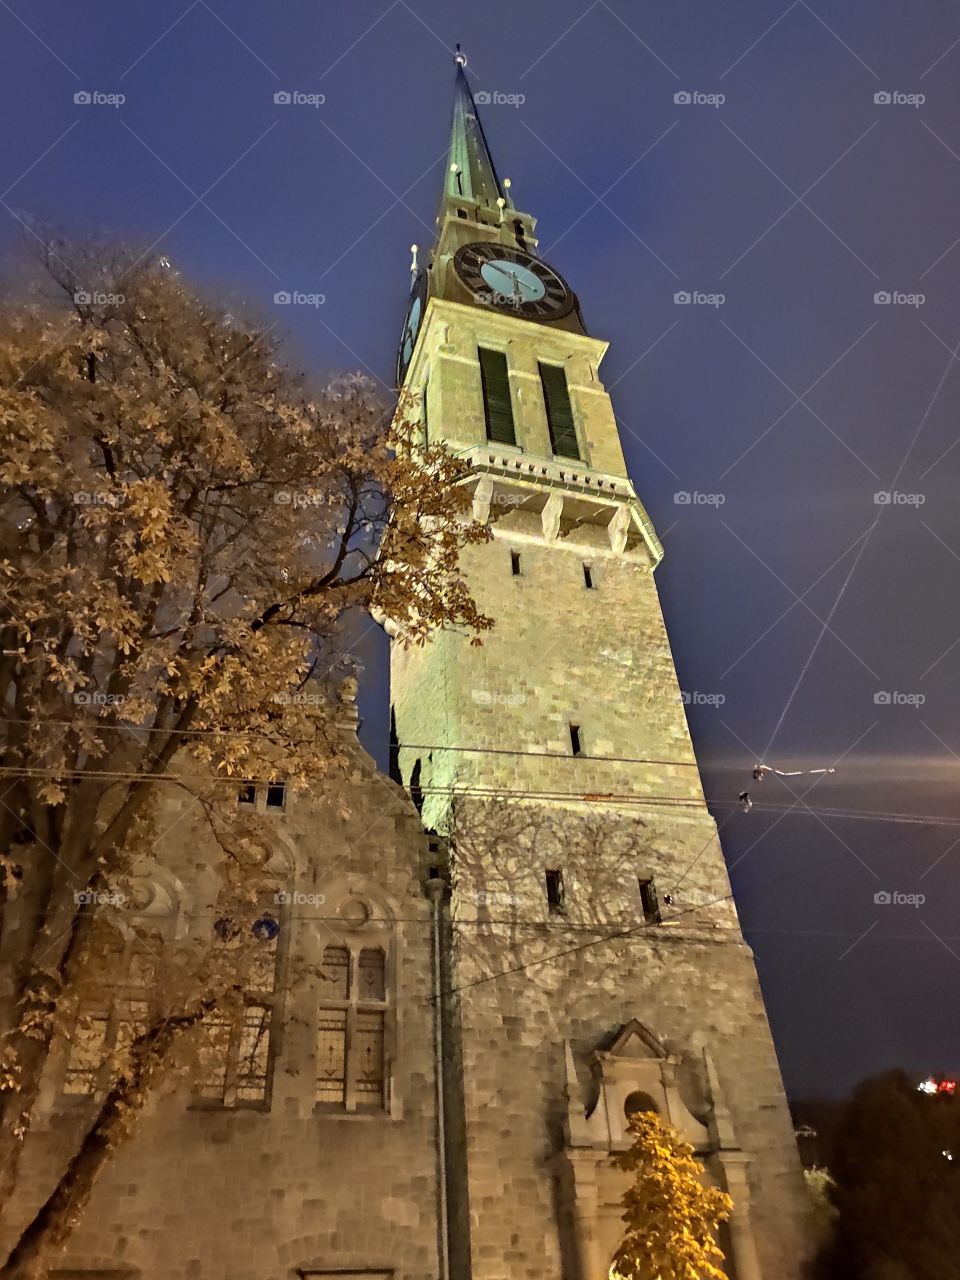 Zurich Switzerland clock tower by night